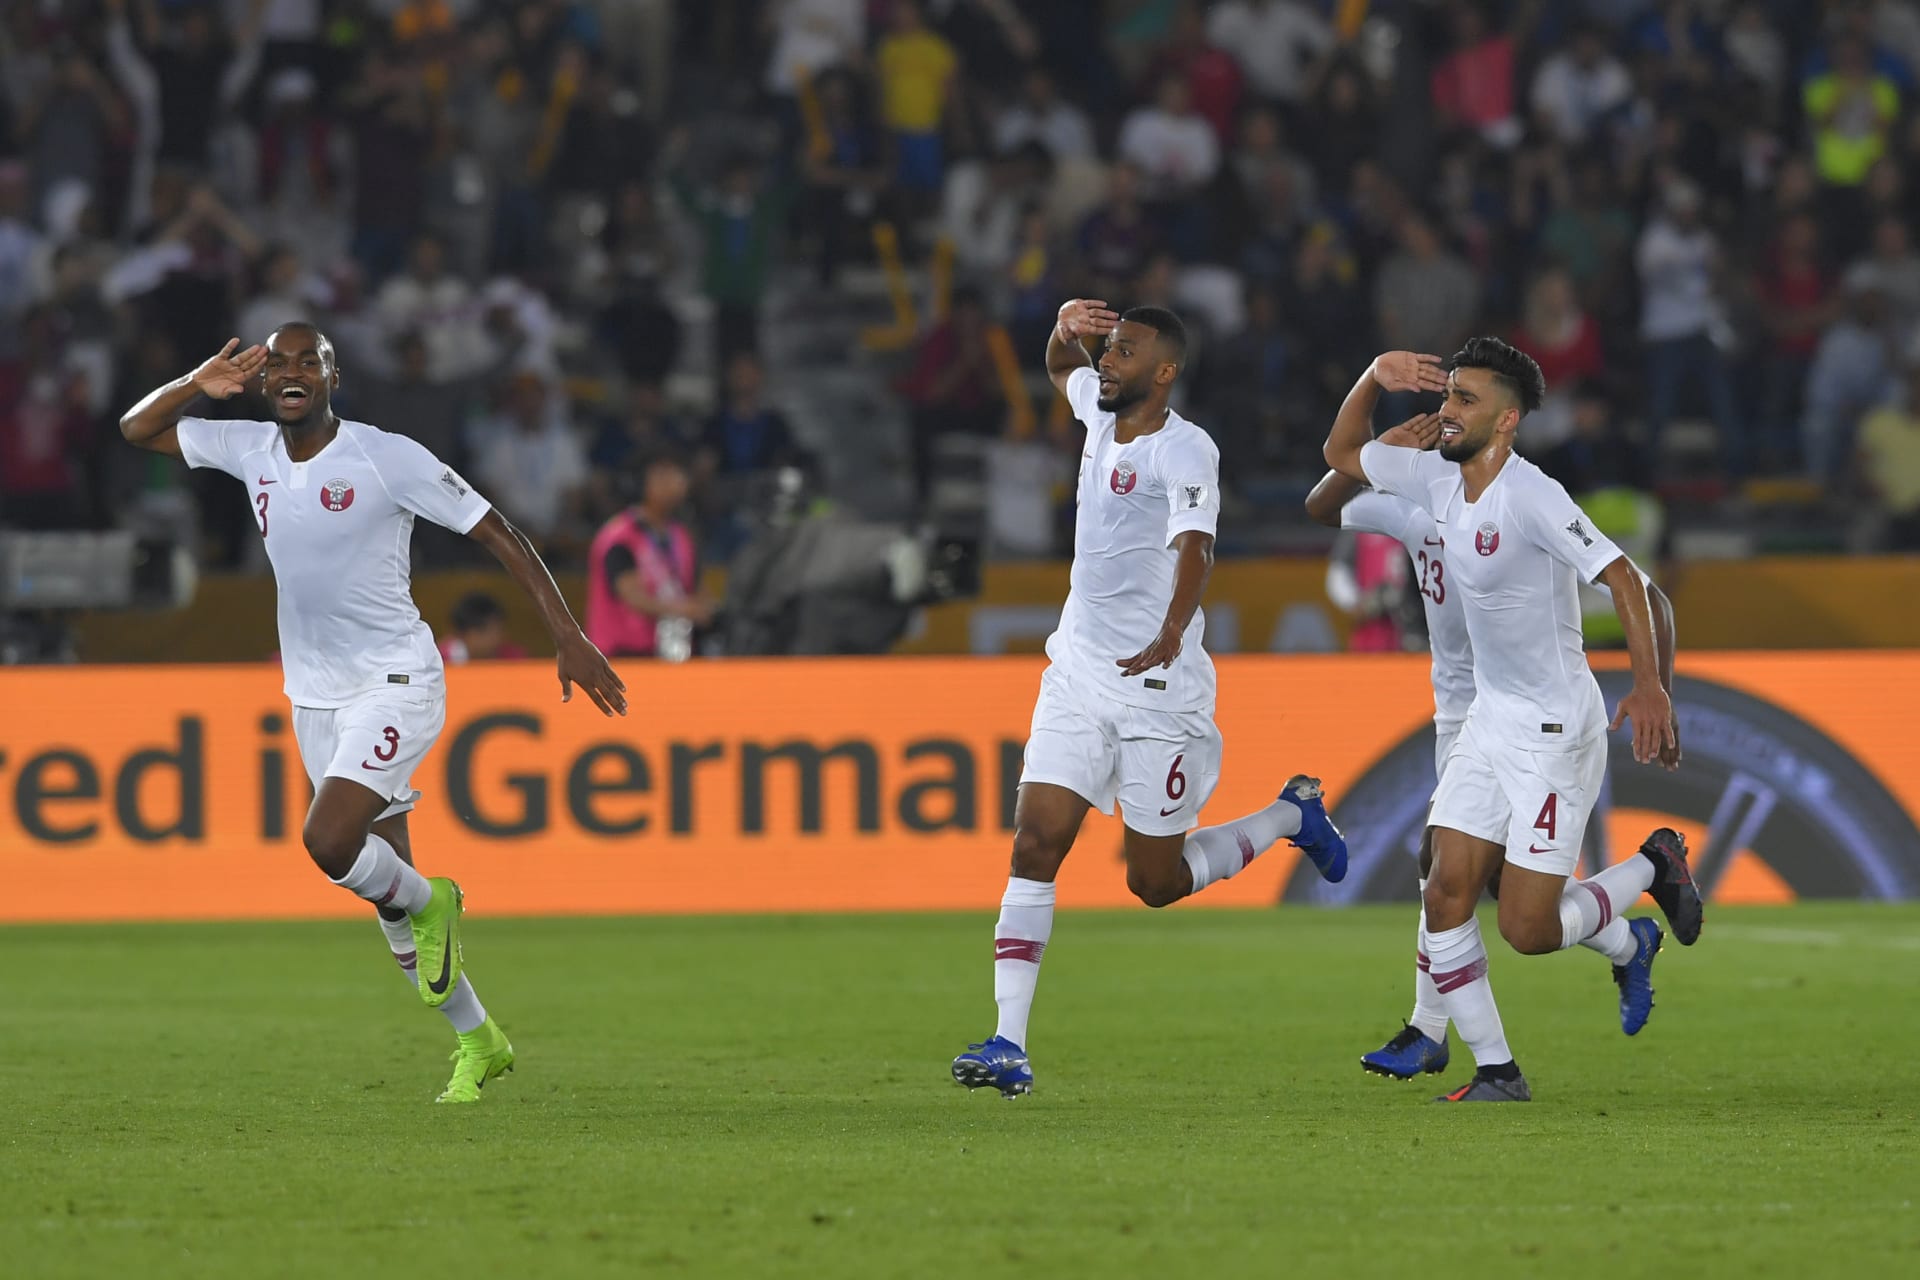 بقيادة أكرم عفيف والمعز علي.. منتخب قطر يعلن قائمته النهائية لكأس آسيا